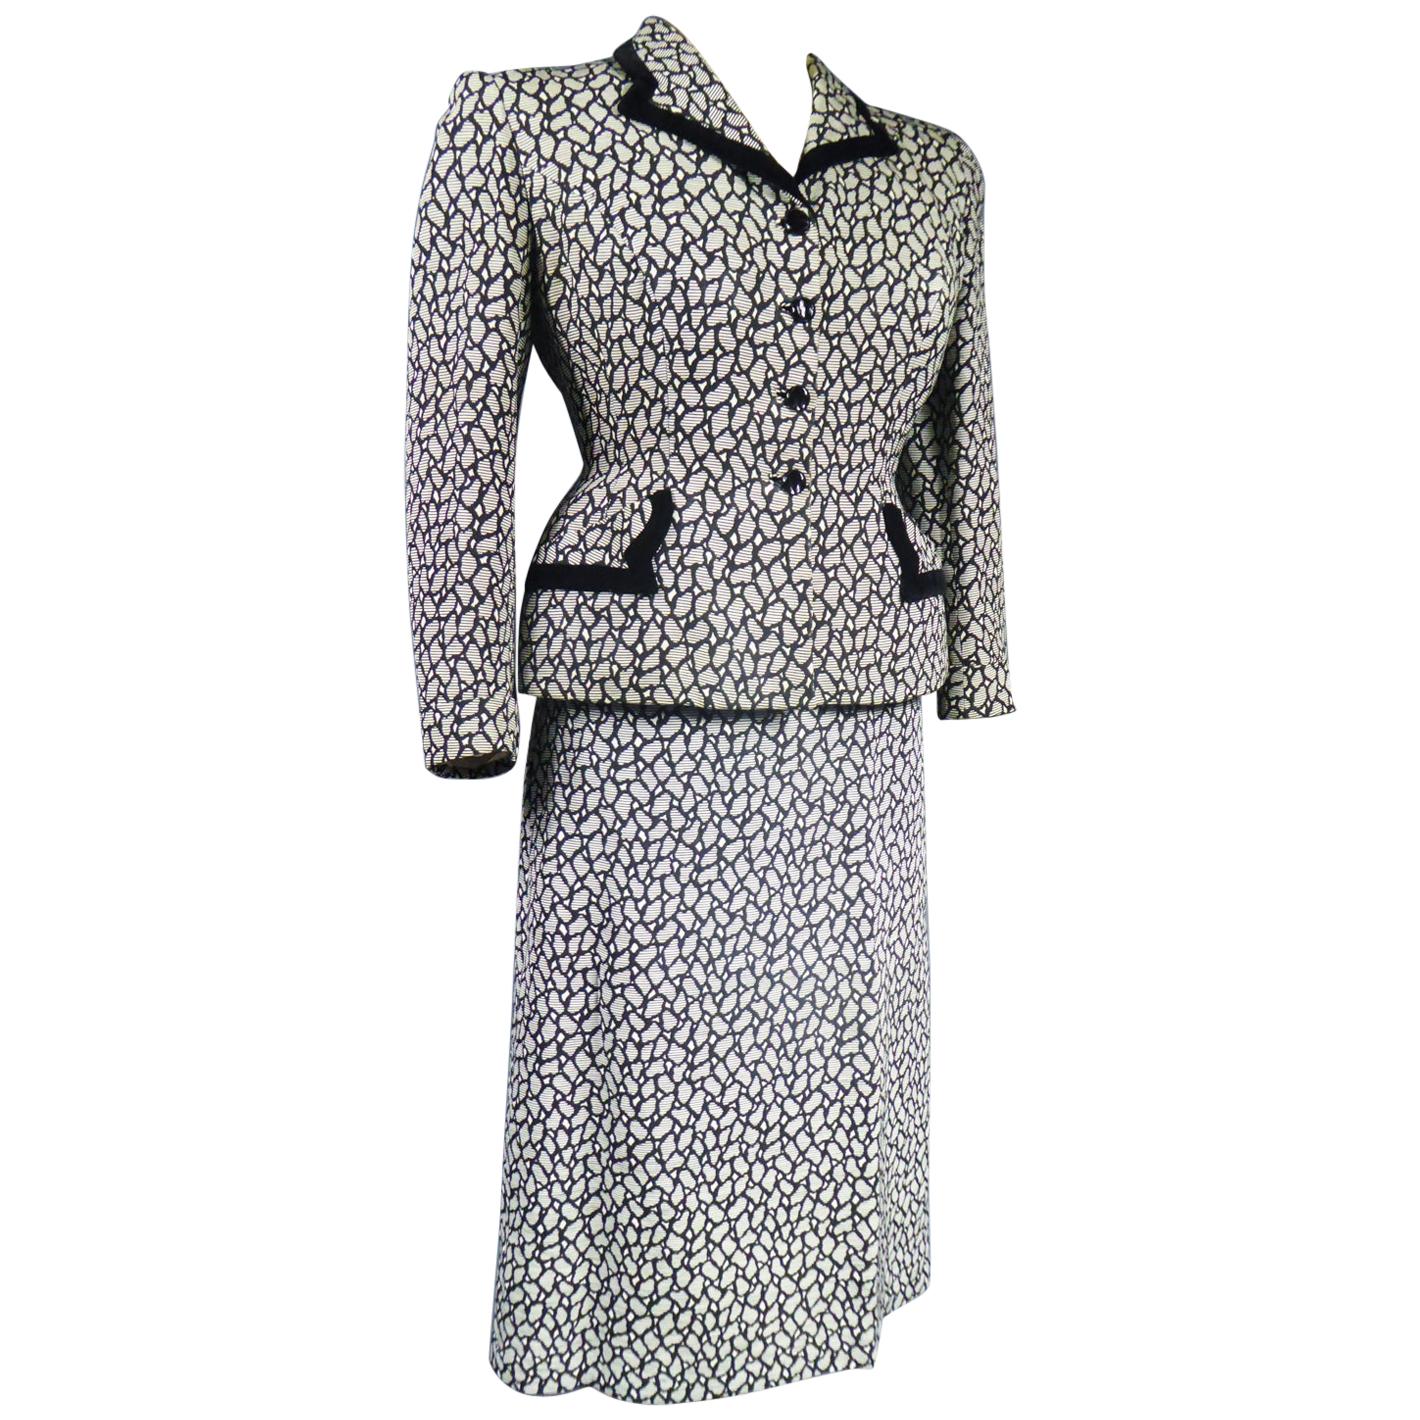 New Look Bar Skirt Suit Circa 1945/1950